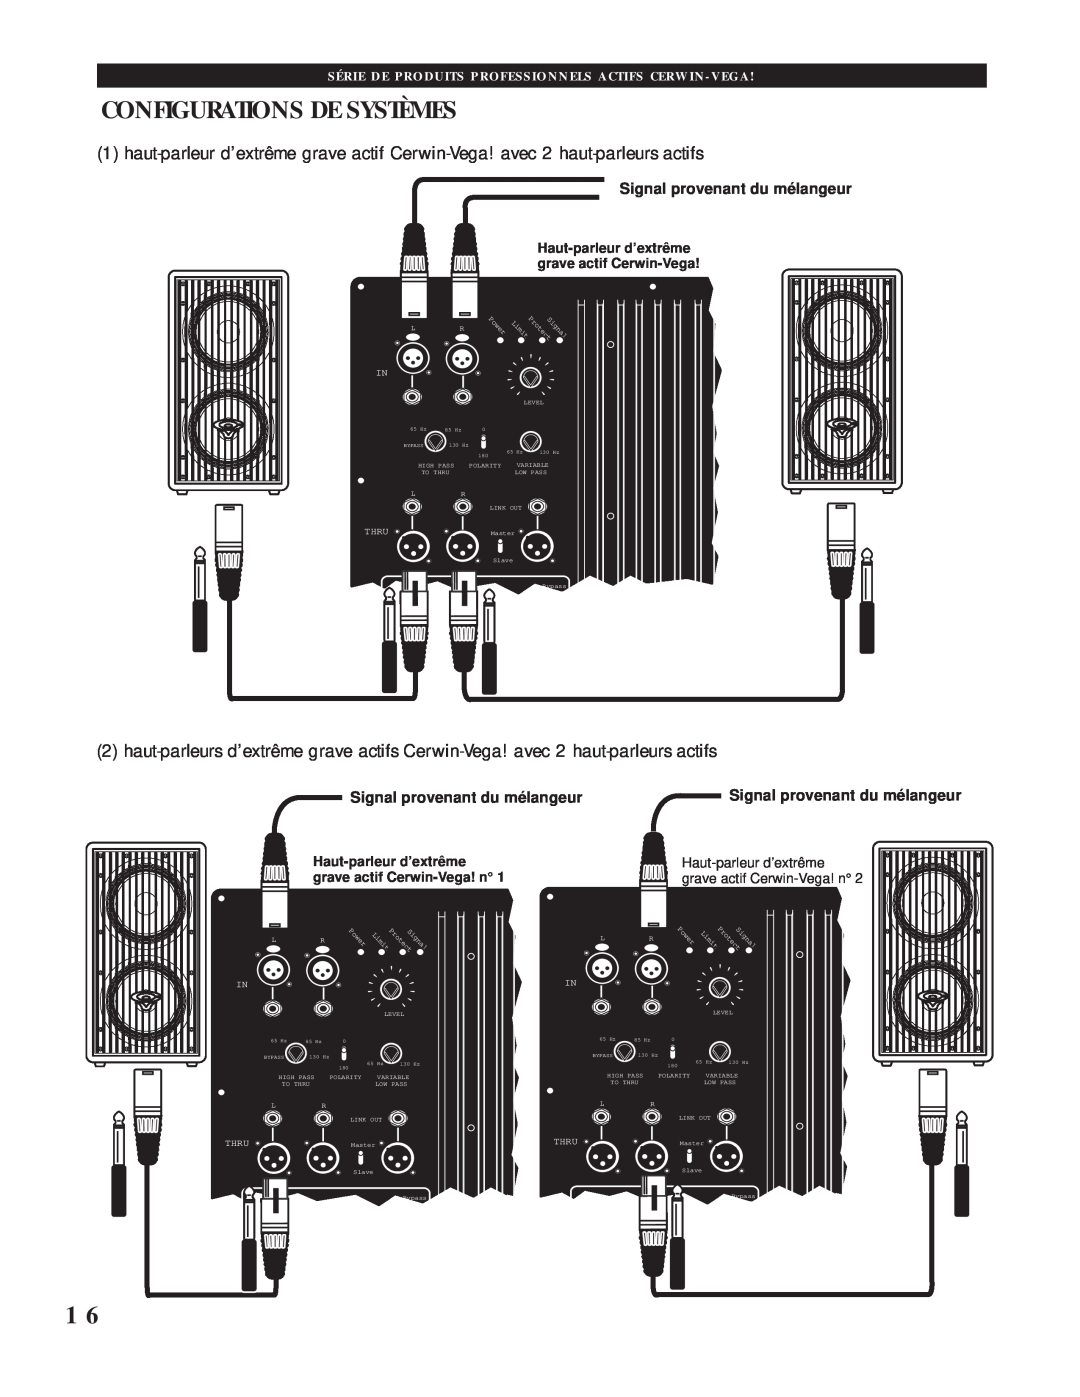 Cerwin-Vega CVA-118, CVA-121 manual Configurations De Systèmes, Signal provenant du mélangeur 